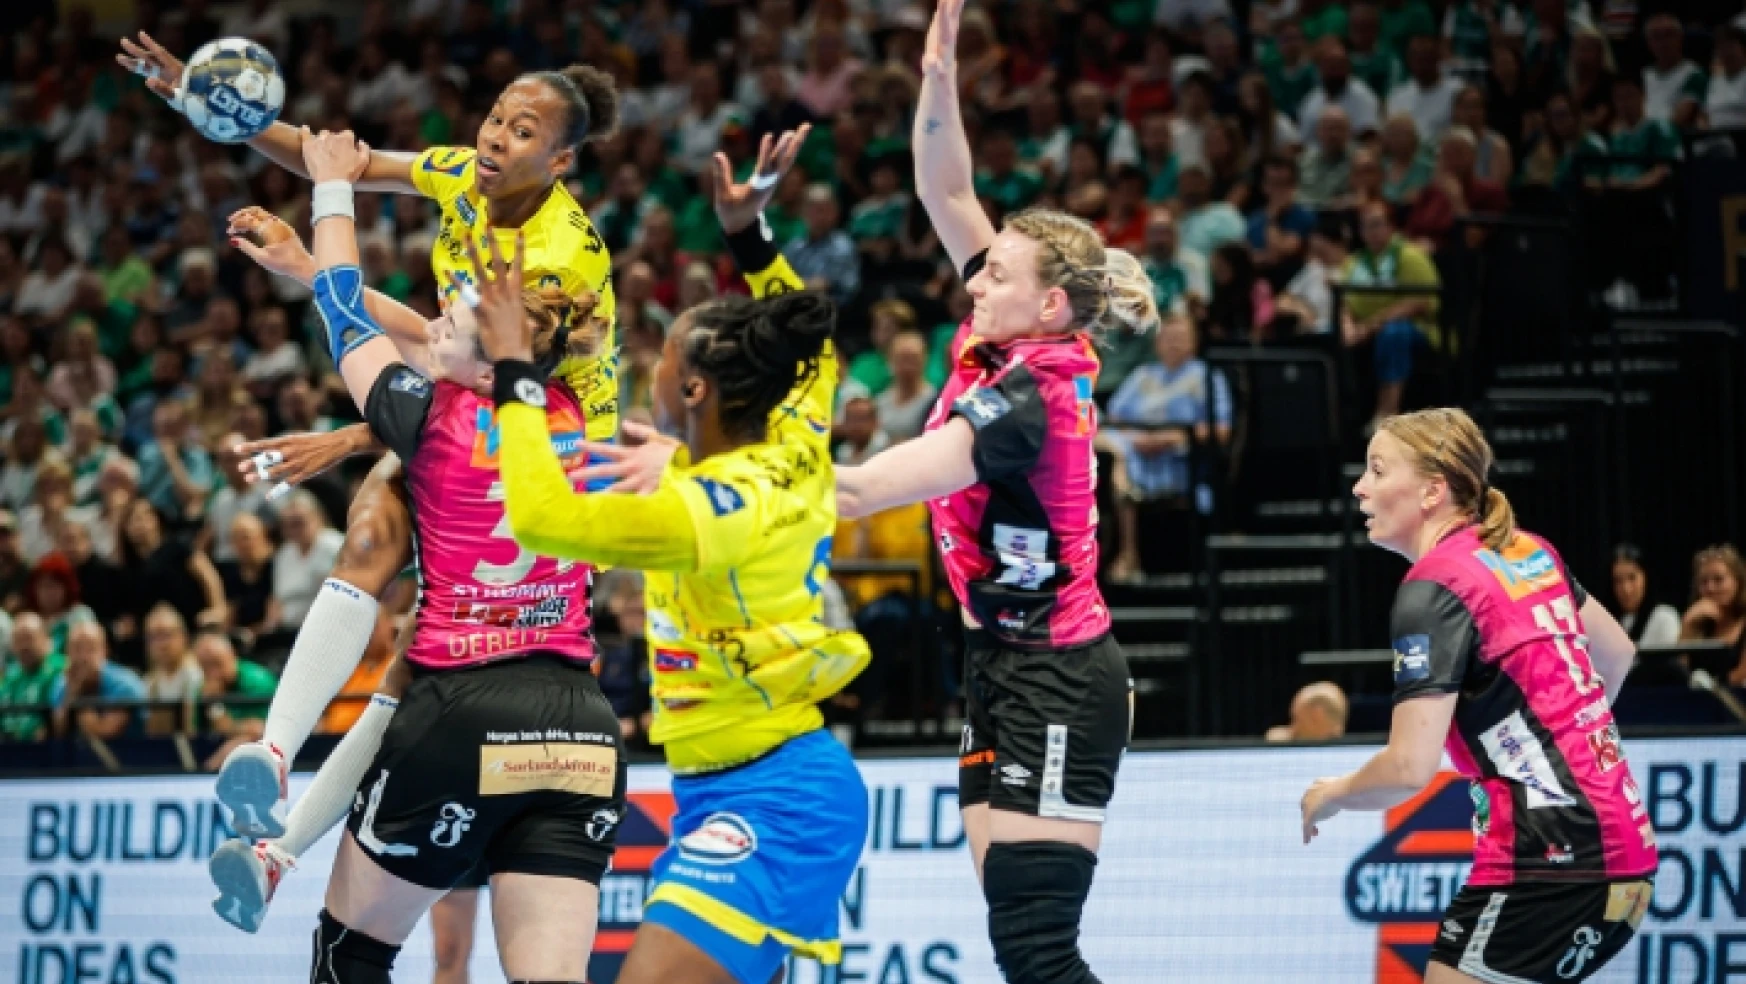 Metz Handball – Vipers Kristiansand: 27-33